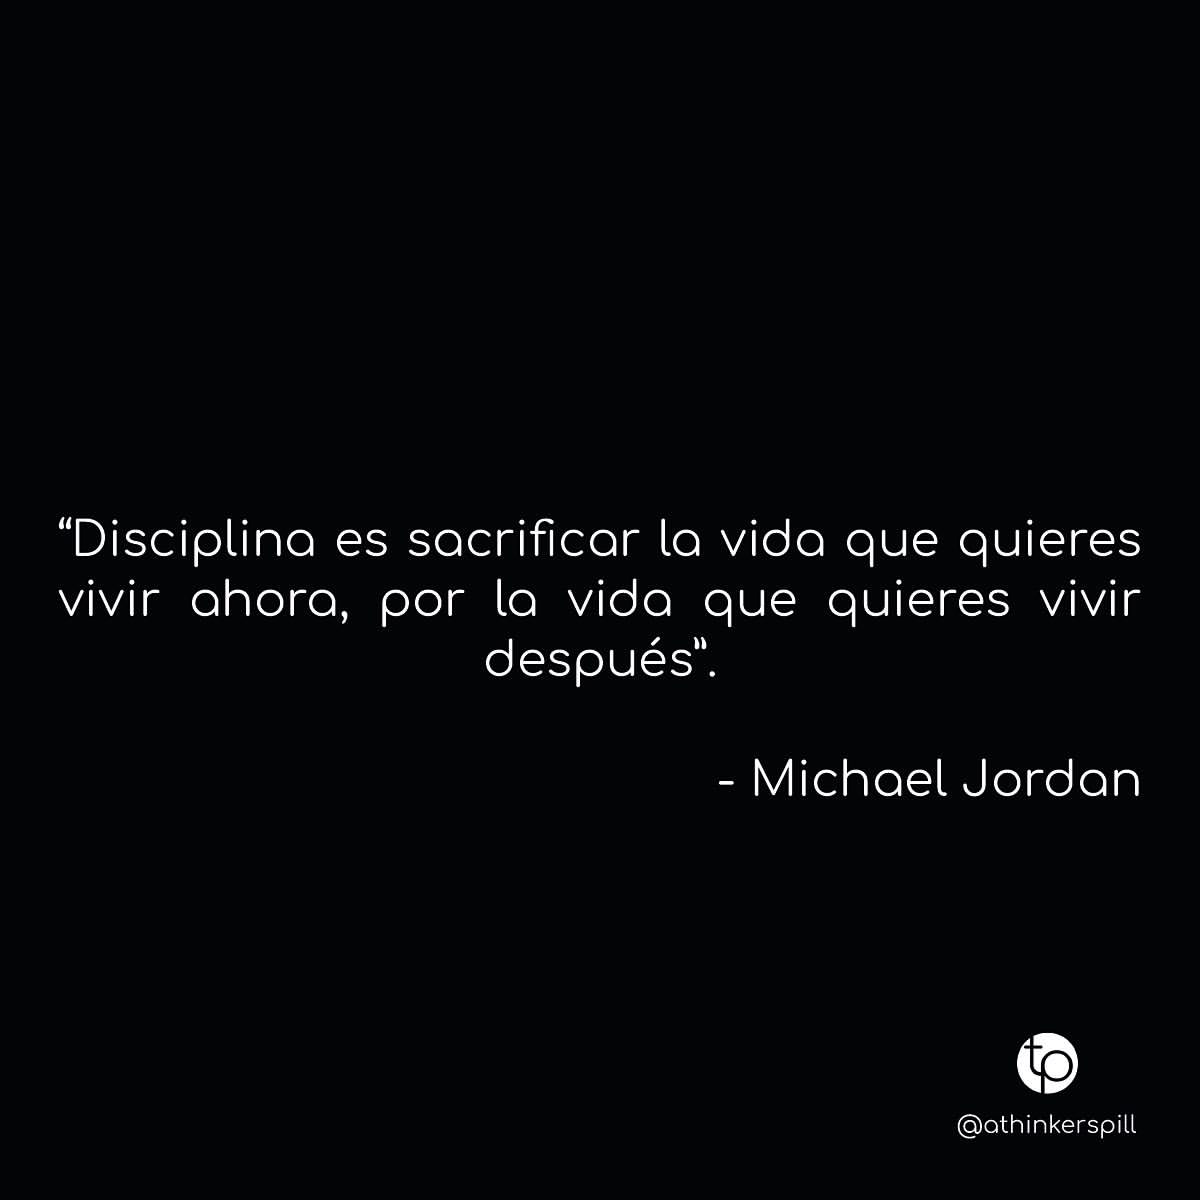 "Disciplina es sacrificar la vida que quieres vivir ahora, por la vida que quieres vivir después". Michael Jordan.